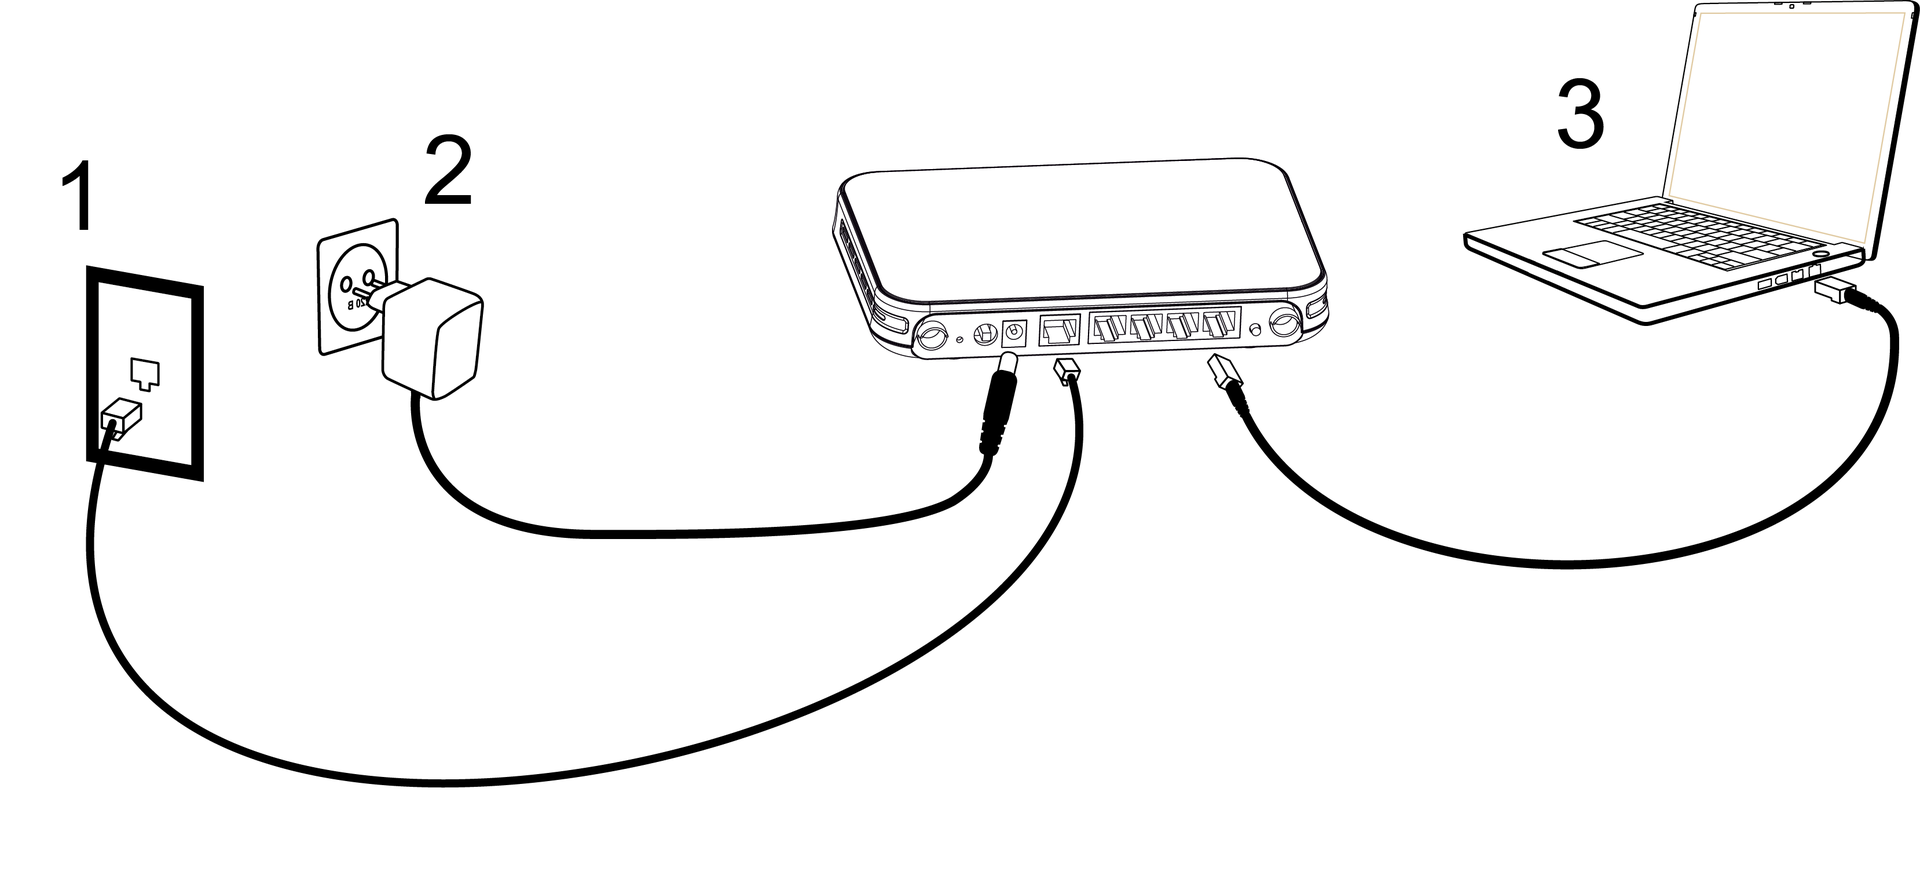 Как подключить роутер без компьютера и ноутбука: настройка wifi, пошаговая инструкция